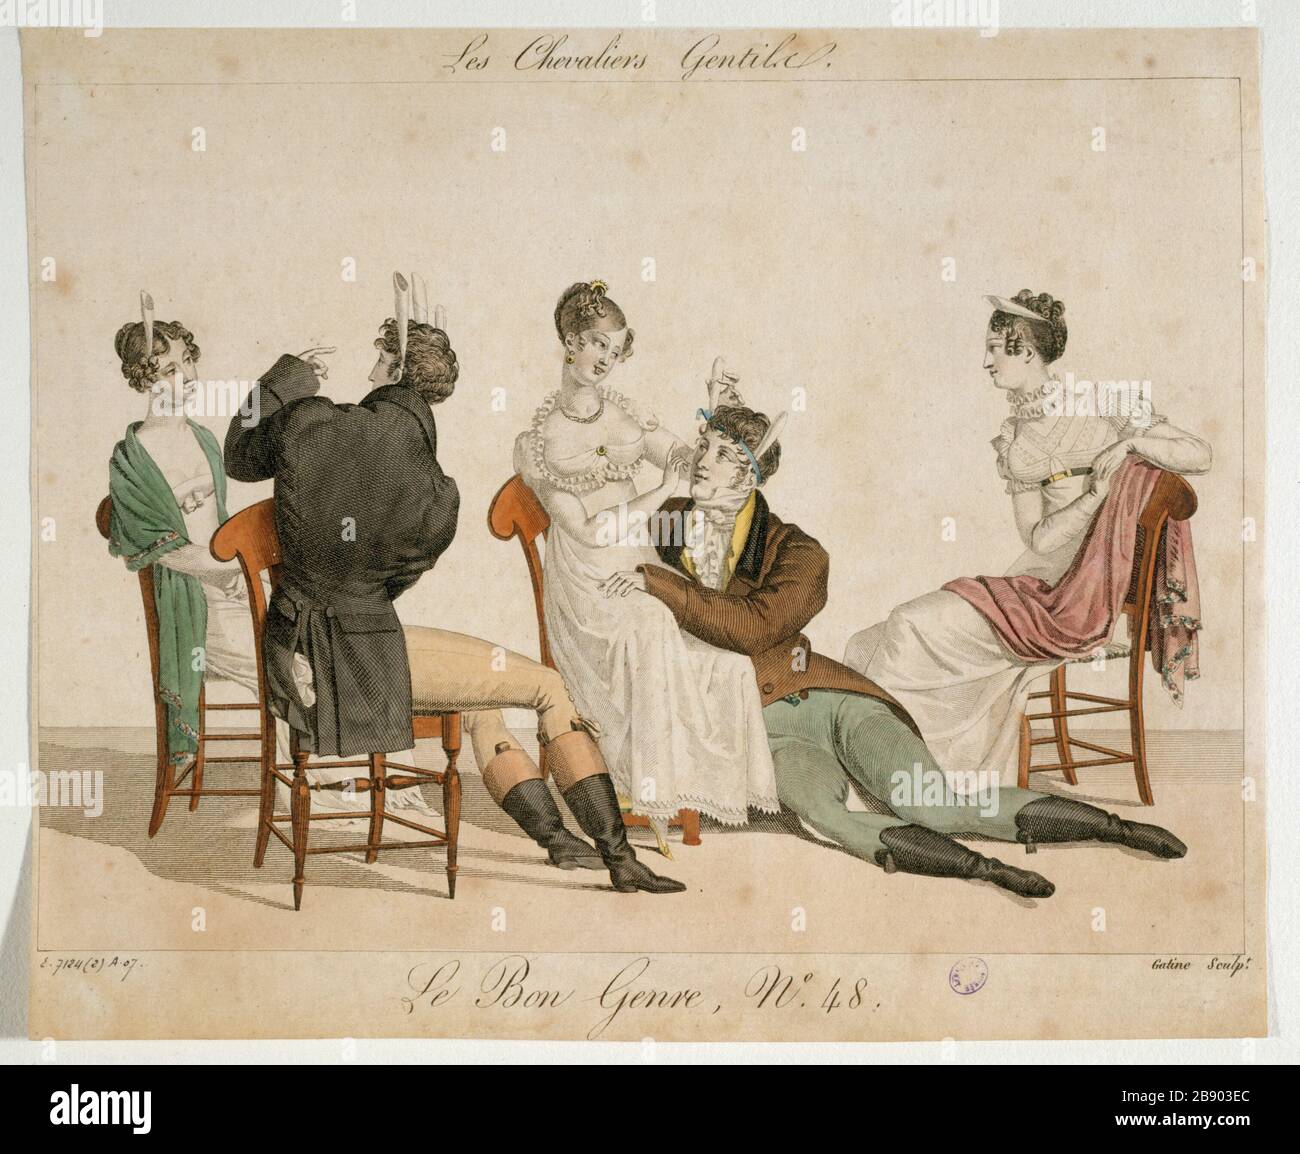 DIE RICHTIGE ART - RITTER GENTILE Georges-Jacques Gatine. "Le Bon Genre numéro 48: Les chevaliers gentils - 1811". Paris, musée Carnavalet. Stockfoto